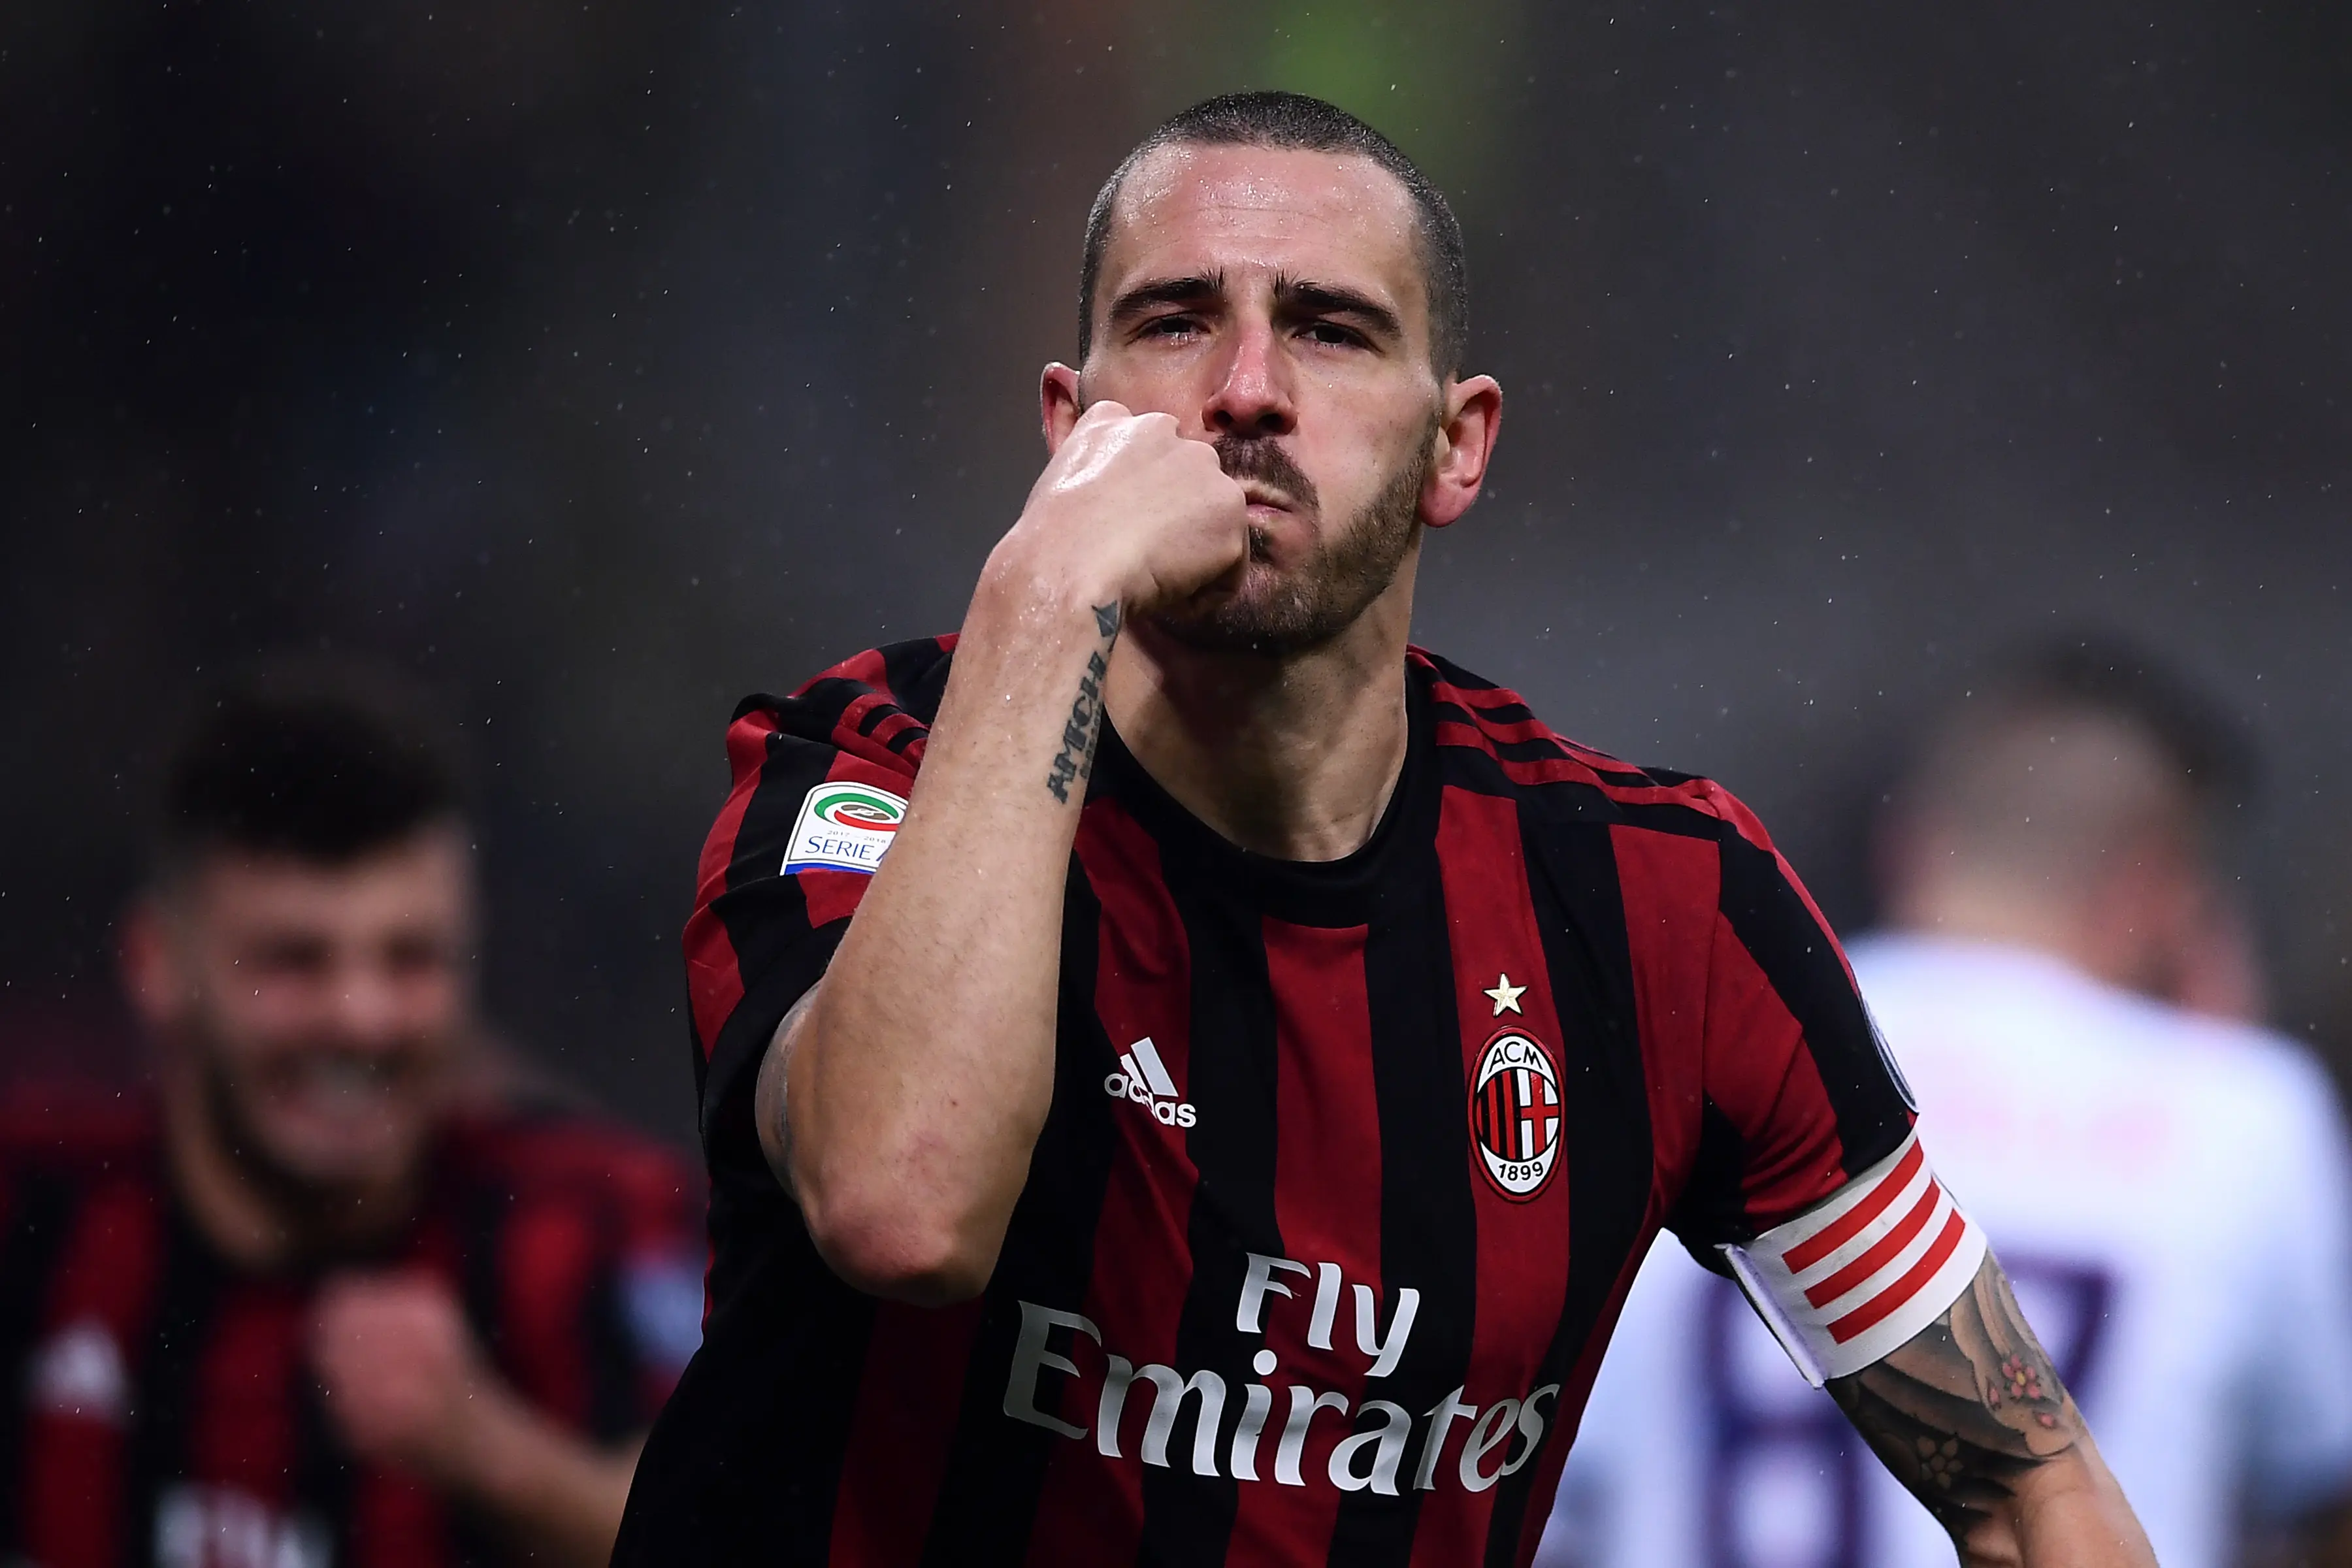 Selebrasi Leonardo Bonucci usai mencetak gol untuk AC Milan ke gawang Crotone. (MARCO BERTORELLO / AFP)